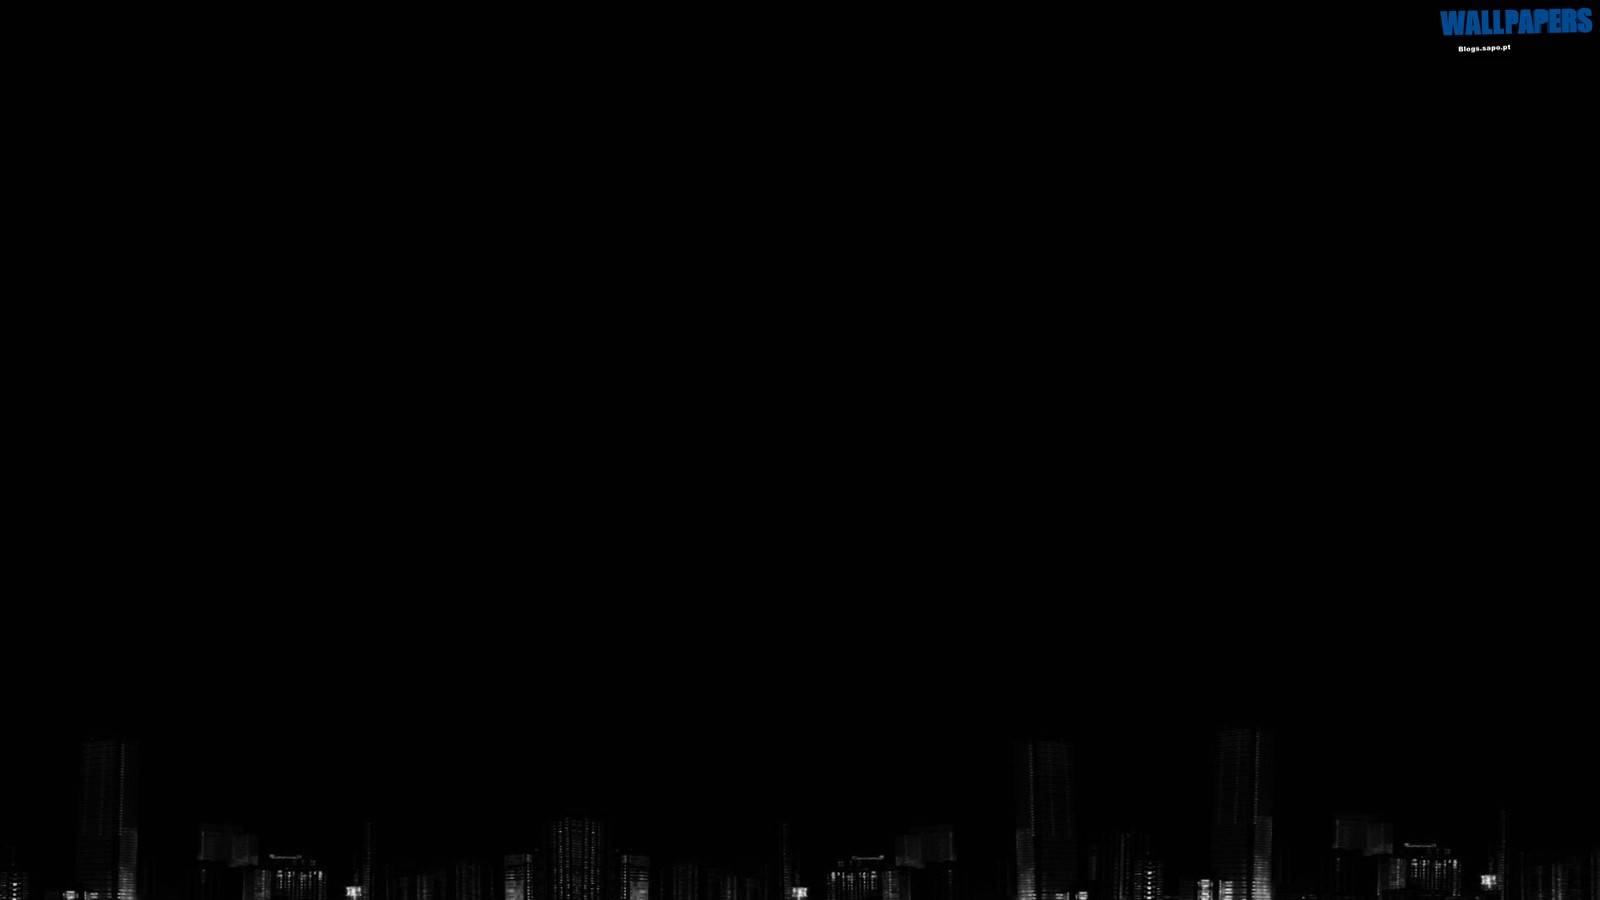 Dark city wallpaper 1600×900. Wallpaper 29 HD